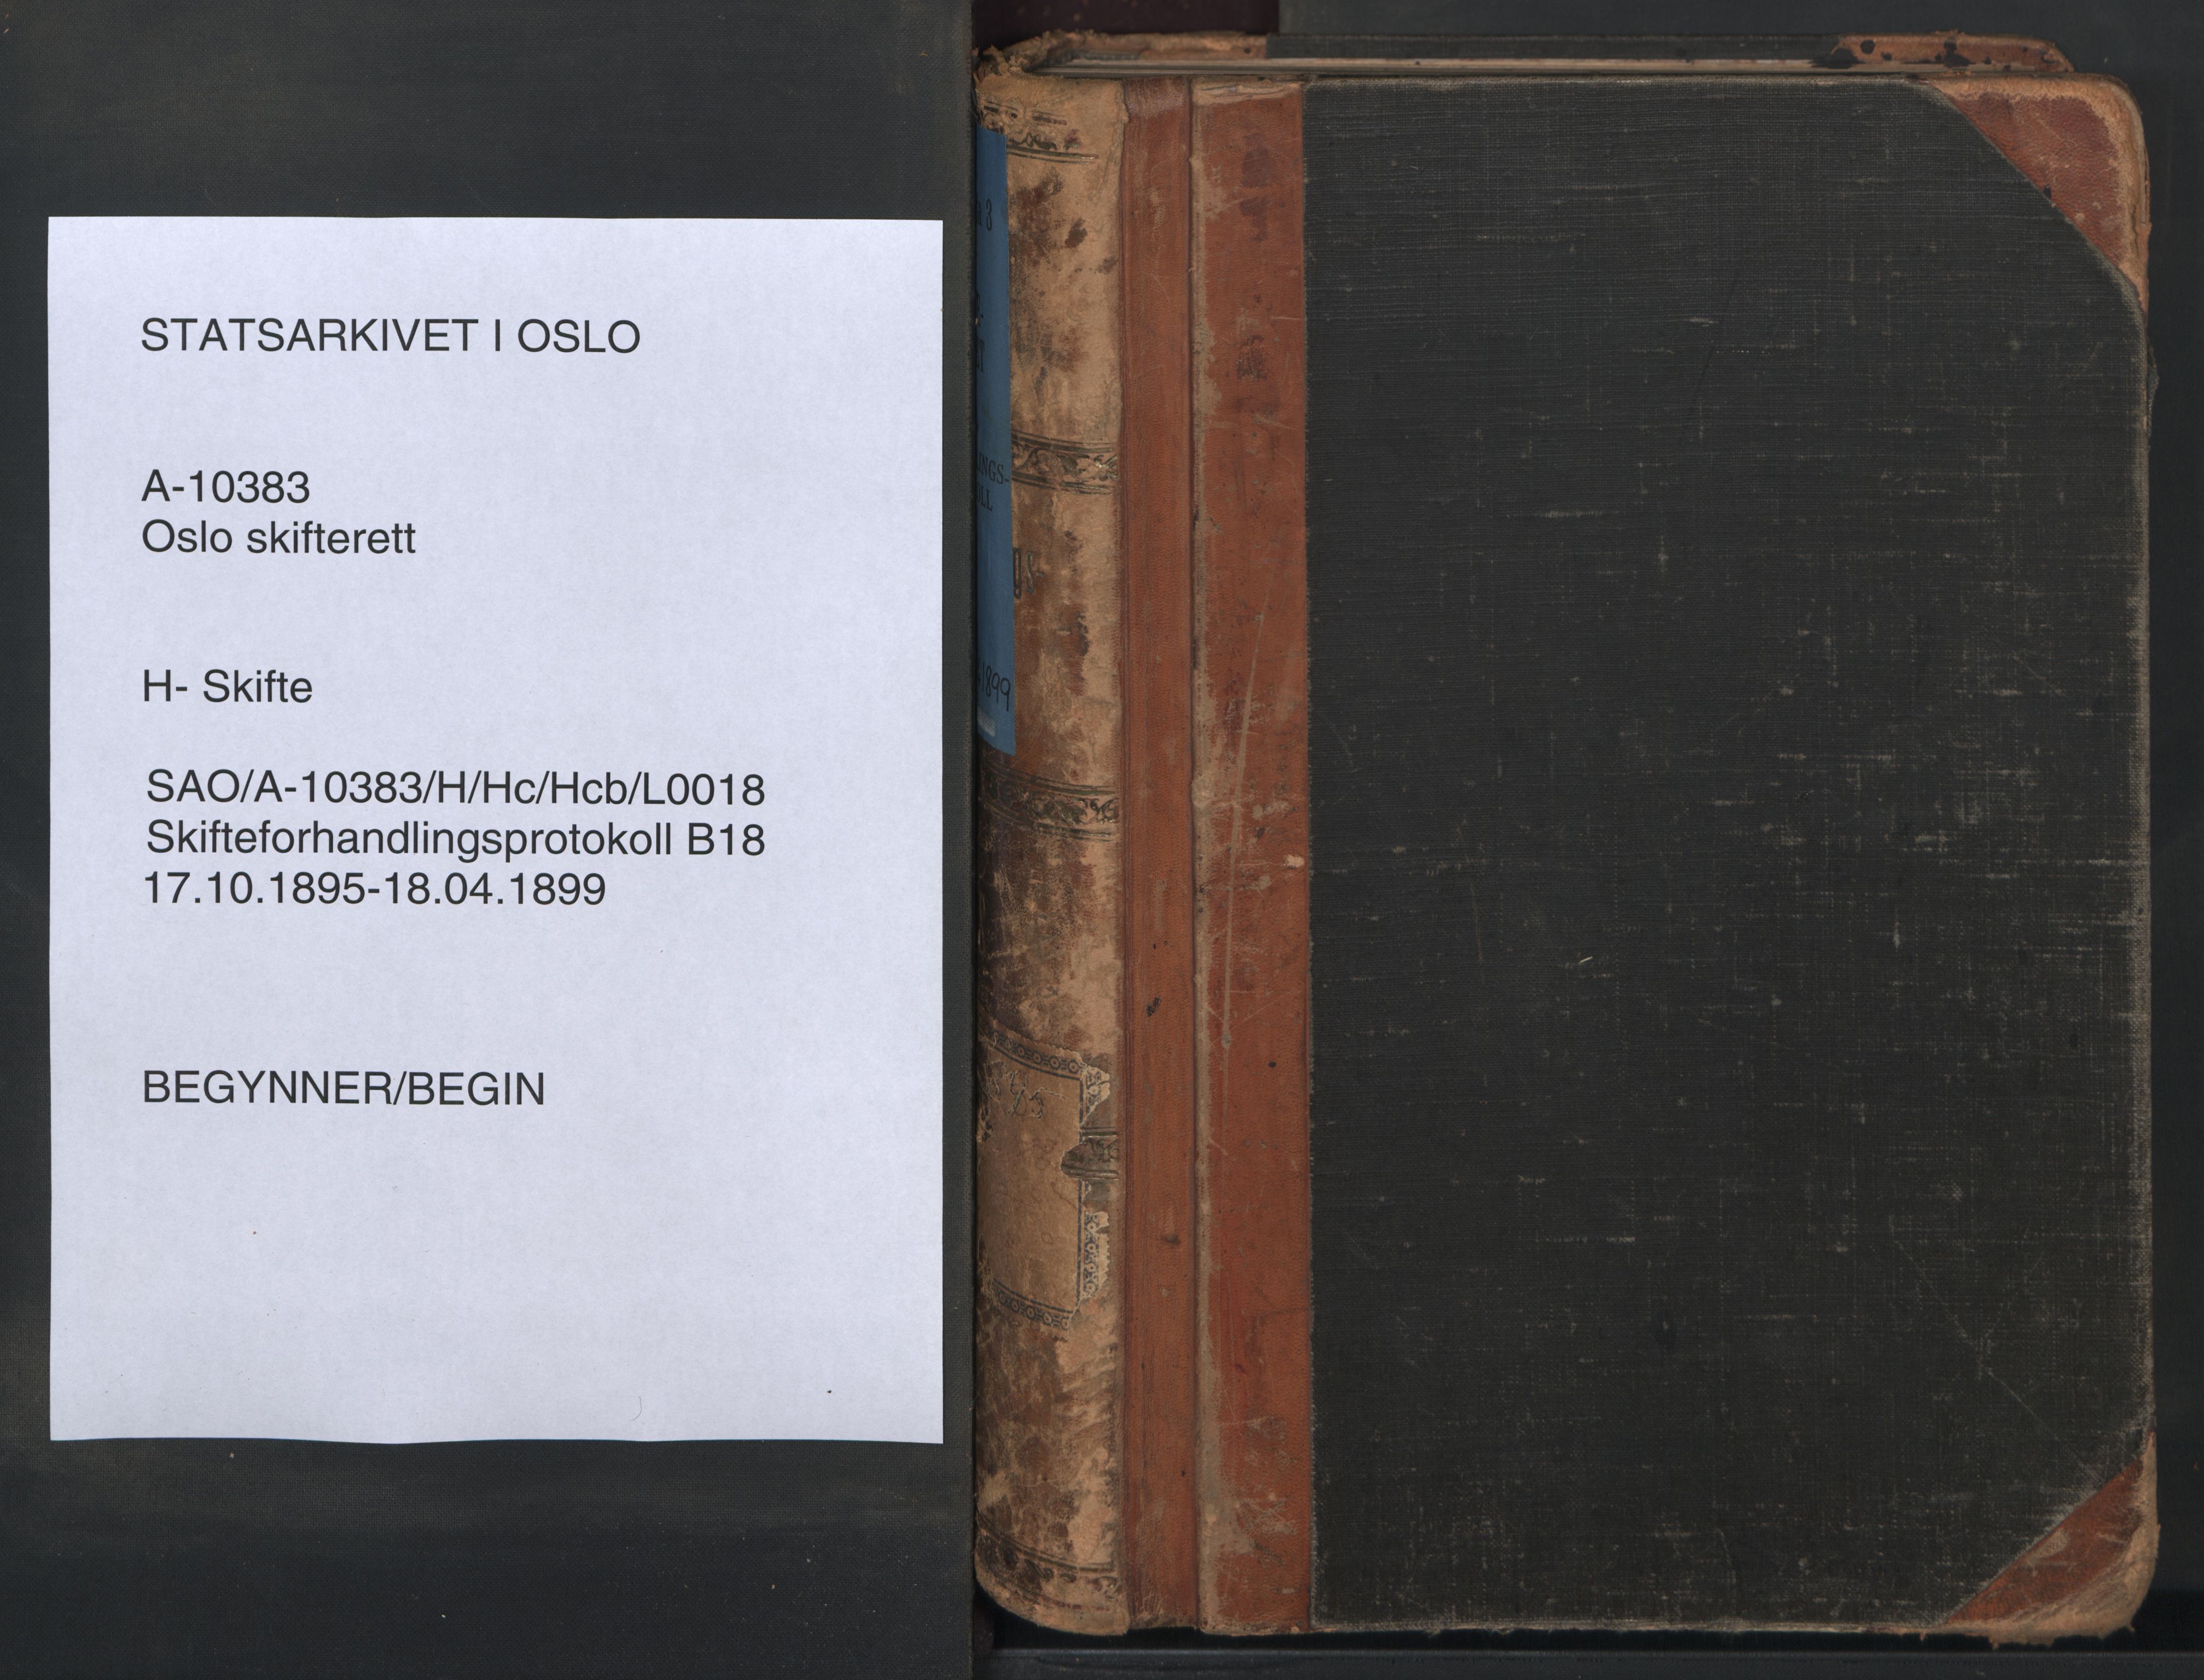 Oslo skifterett, SAO/A-10383/H/Hc/Hcb/L0018: Skifteforhandlingsprotokoll, 1895-1899